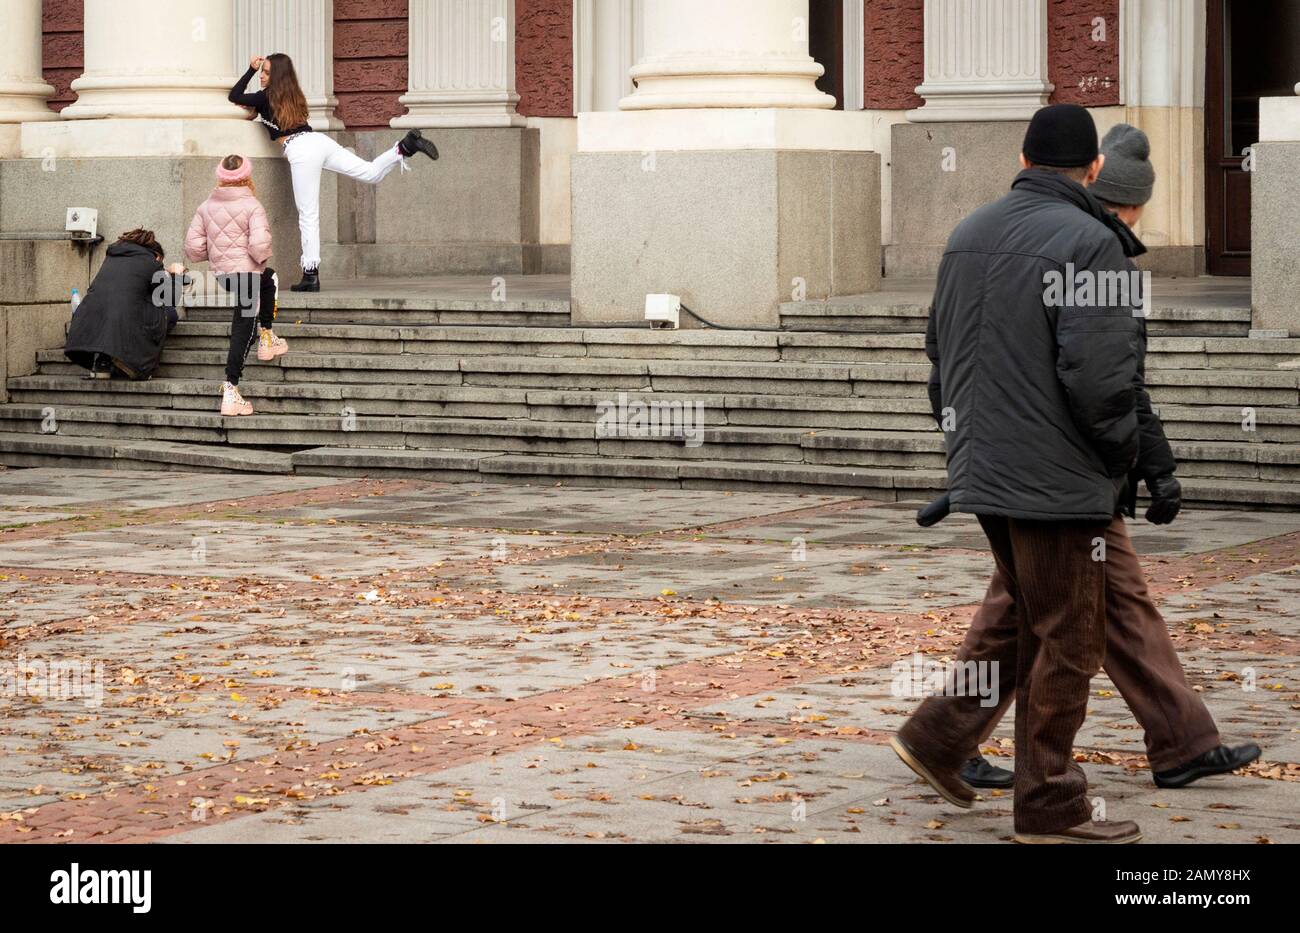 Generationslücke zeigt sich als zwei erfahrene Passanten, die eine Gruppe von Teenagern beobachten, die in Sofia, Bulgarien, Osteuropa, dem Balkan und der EU posieren und Fotos machen Stockfoto